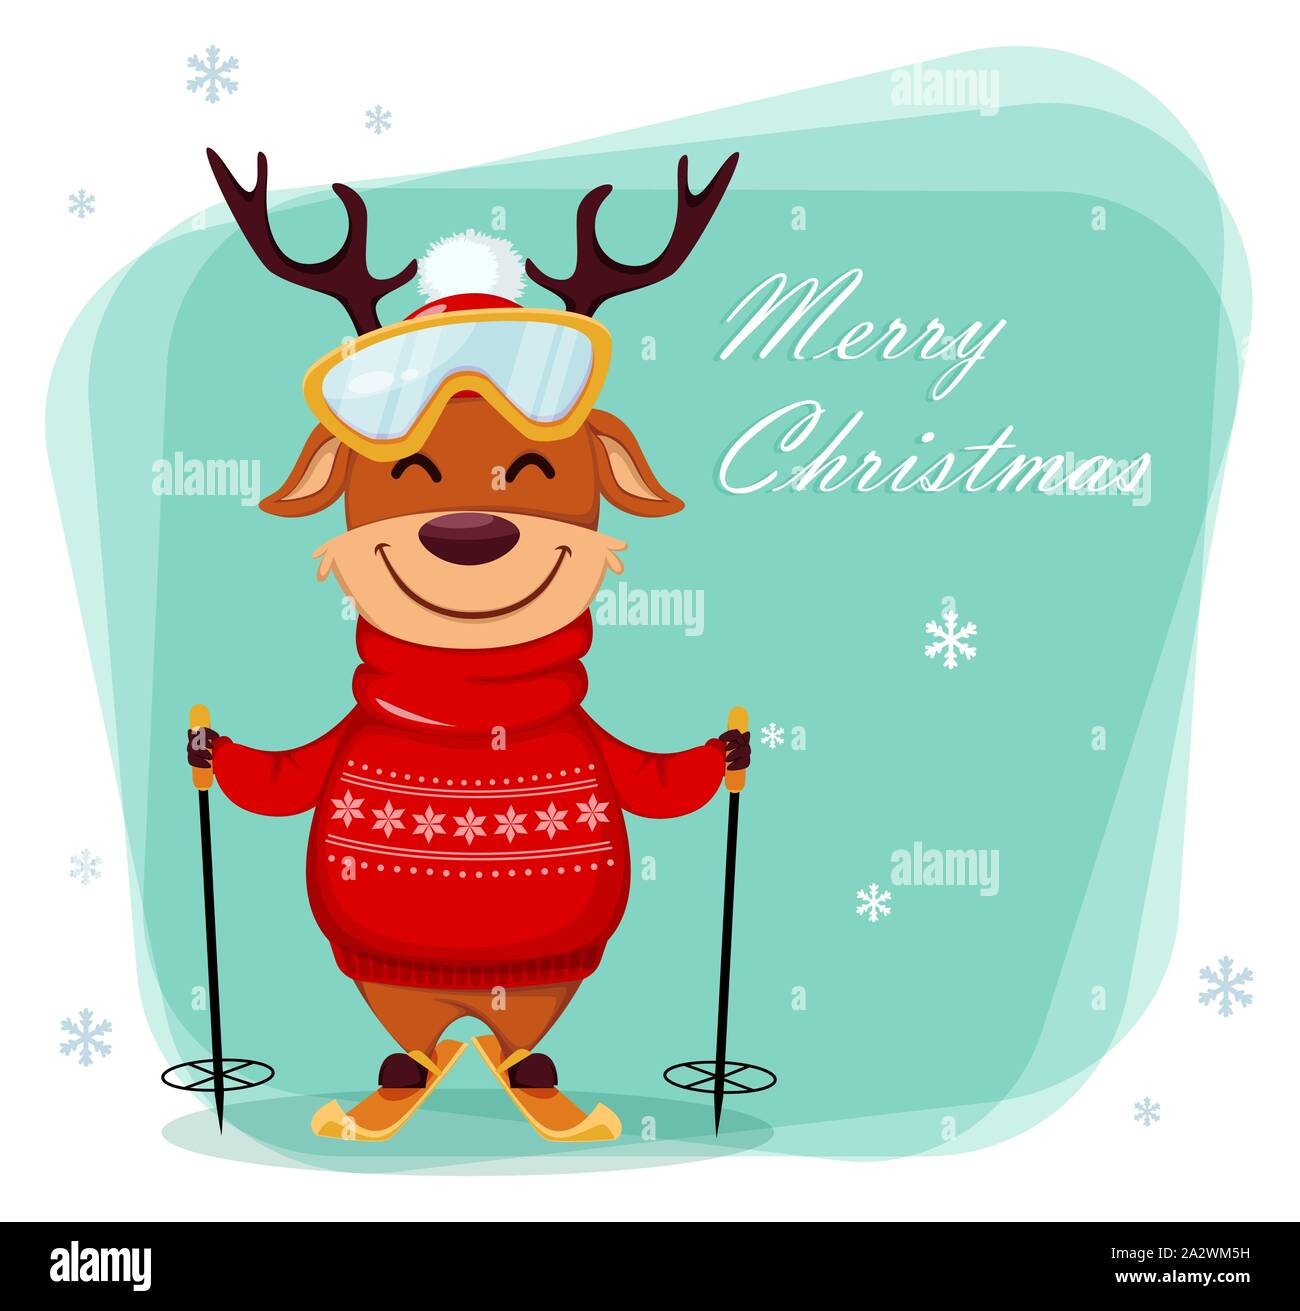 Frohe Weihnachten Grusskarten mit lustigen Rentier, Ski zu fahren. Cute cartoon Charakter. Vector Illustration Stock Vektor